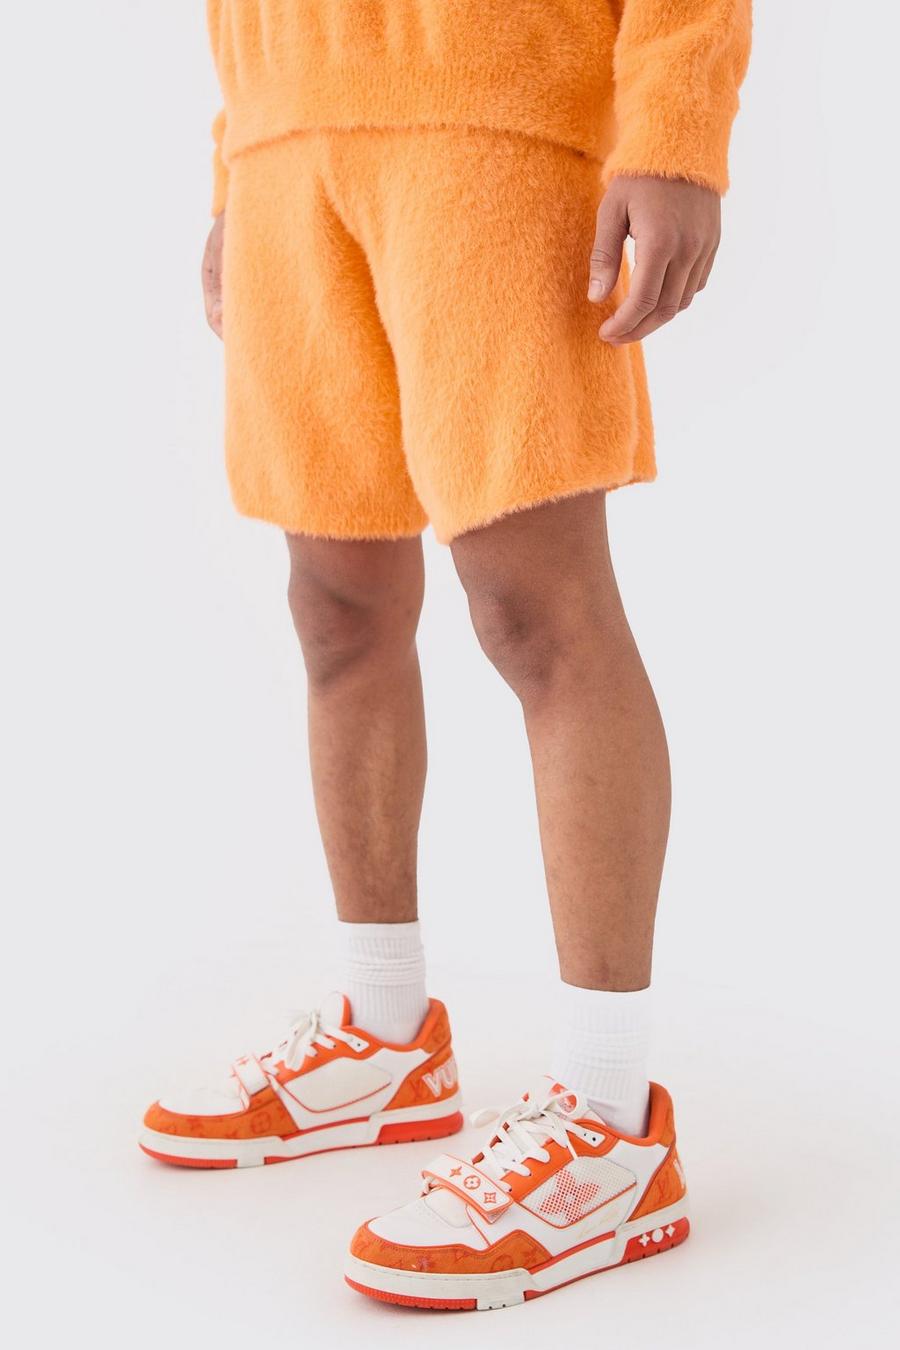 Lockere flauschige Shorts in Orange